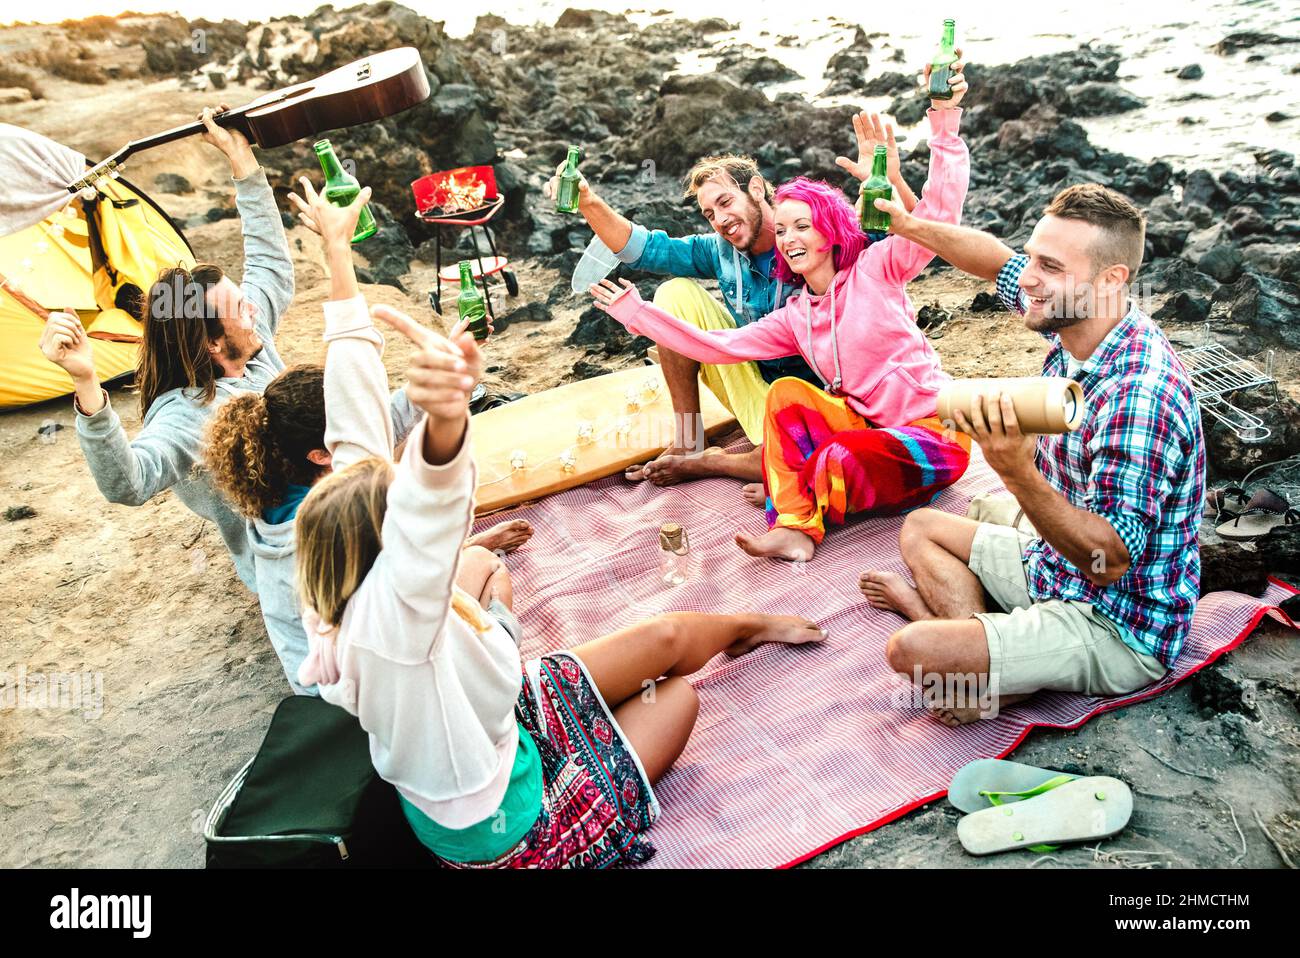 Alternative Freunde, die zusammen Spaß am Strand Camping Party - Life style Reisekonzept mit glücklichen Menschen Reisende toasten und trinken abgefüllt b Stockfoto